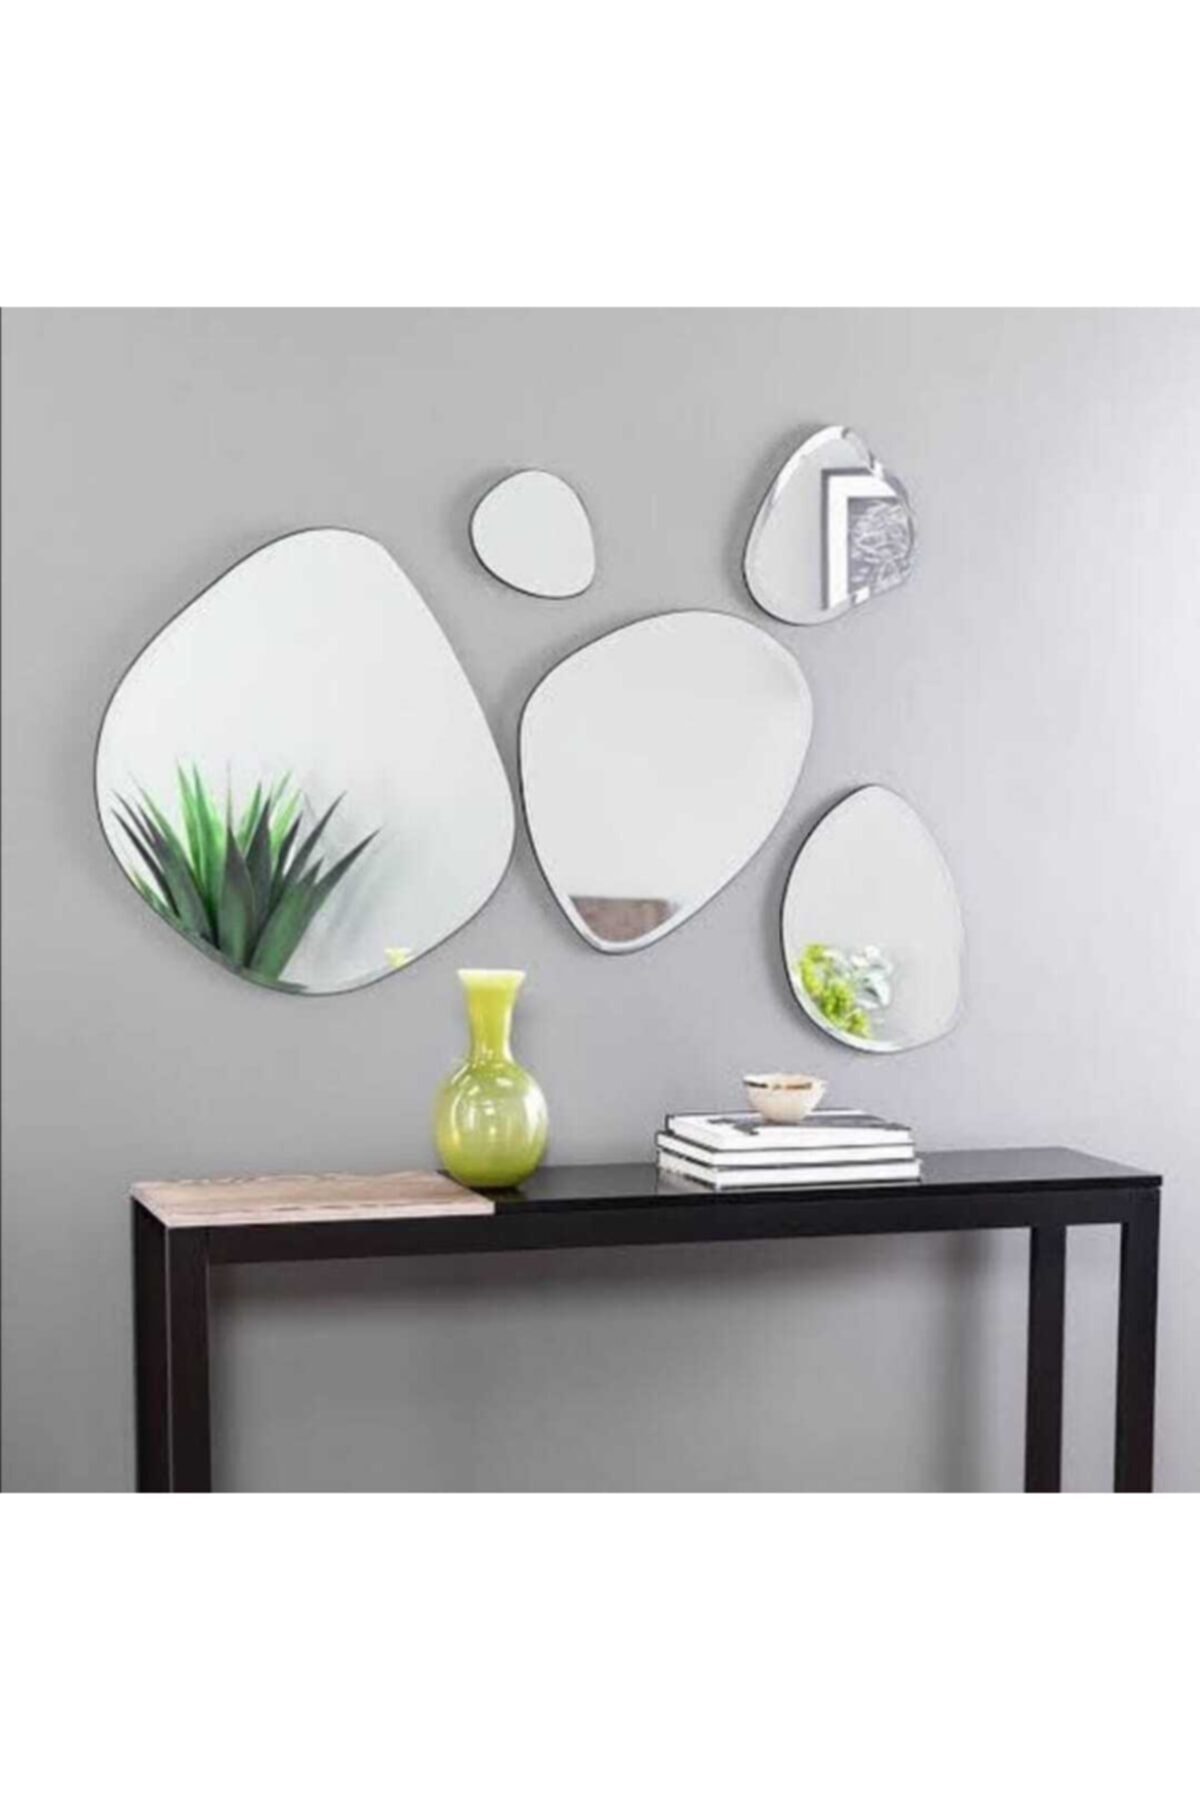 iş dolandırma yardımcı  Aypars Atlye Asimetrik,dekoratif 5'li Ayna Seti 4 Mm Flotal Ayna Fiyatı,  Yorumları - TRENDYOL